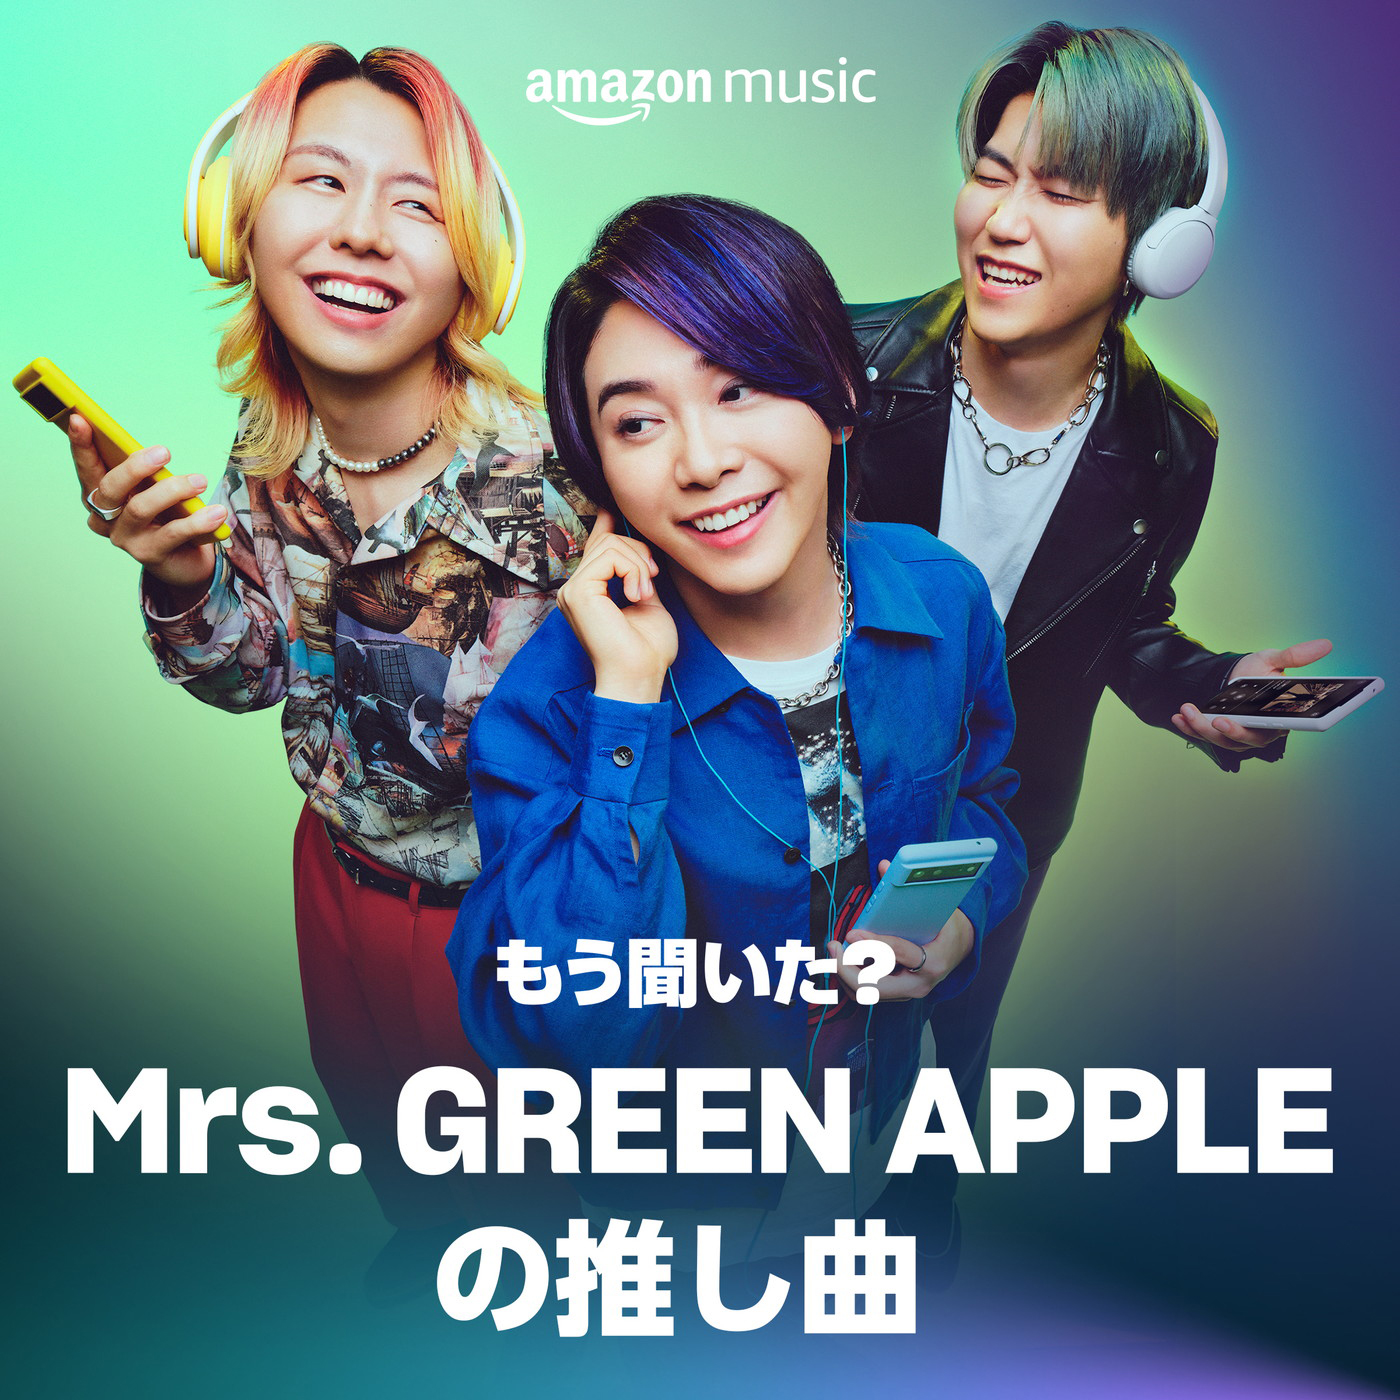 Mrs. GREEN APPLE、Amazon Musicブランドキャンペーン「もう聞いた? みんなの推し曲」の新CMに登場 - 画像一覧（4/20）